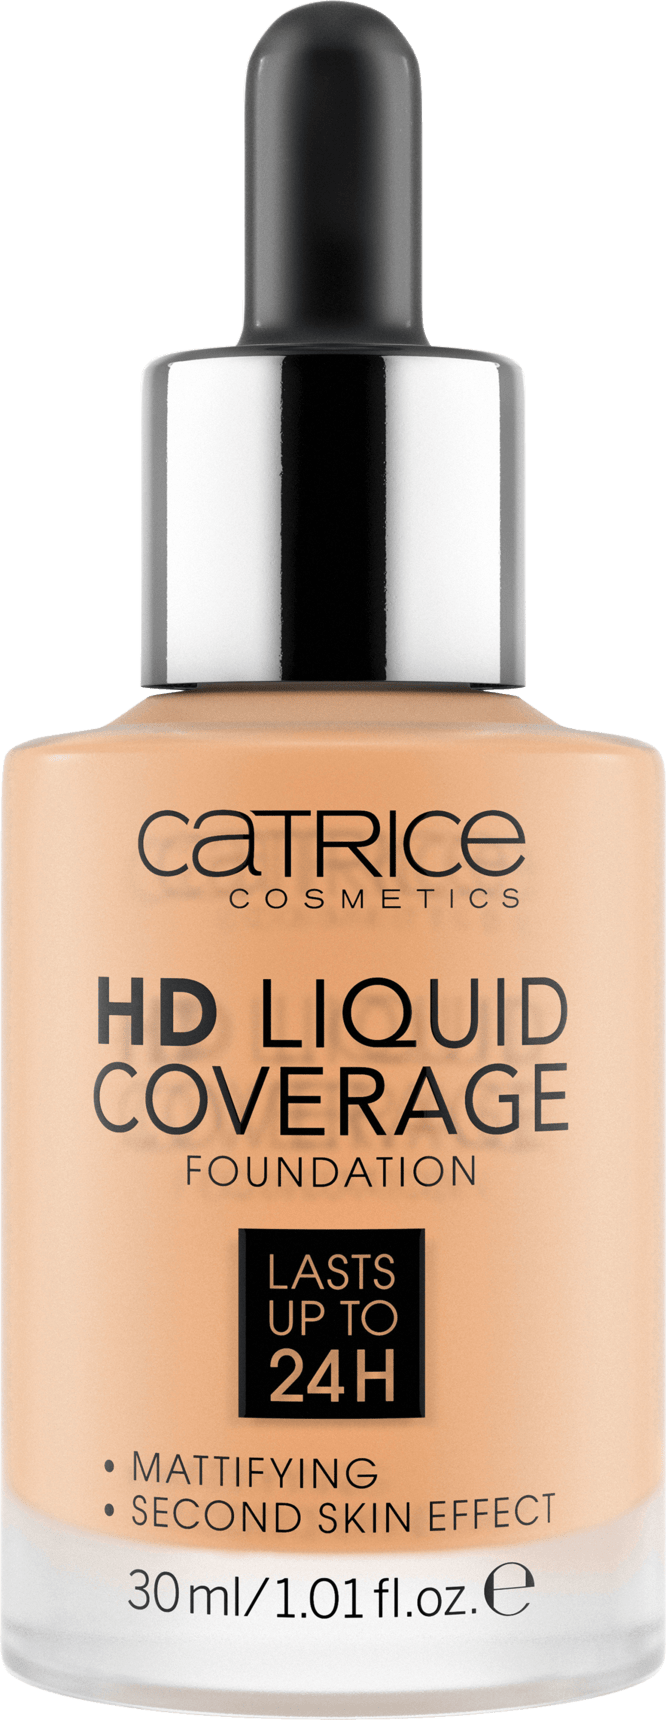 Make-Up Hd Liquid Coverage Foundation Golden Beige 037, 30 Ml